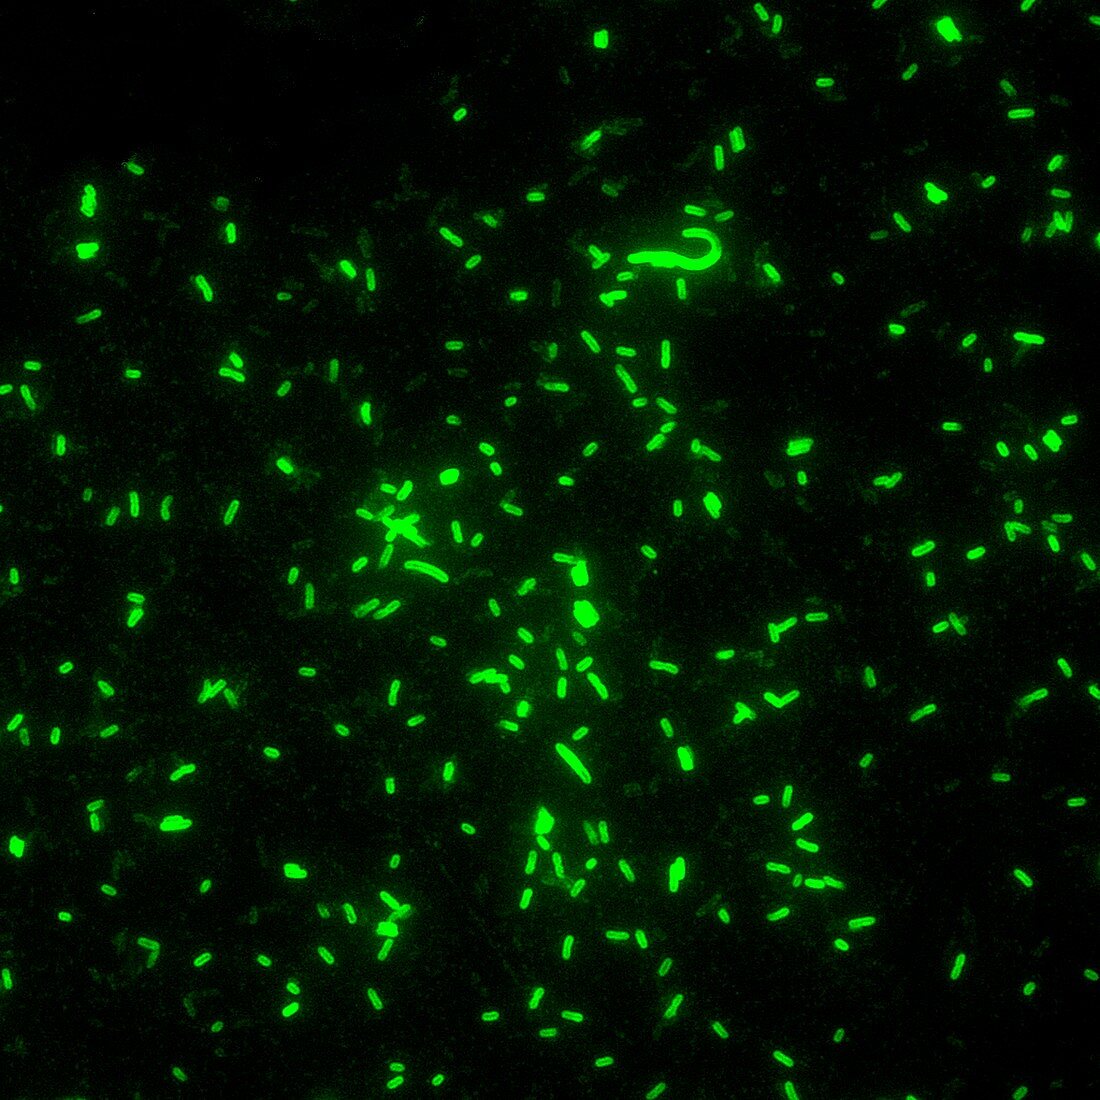 Plague bacteria,light micrograph